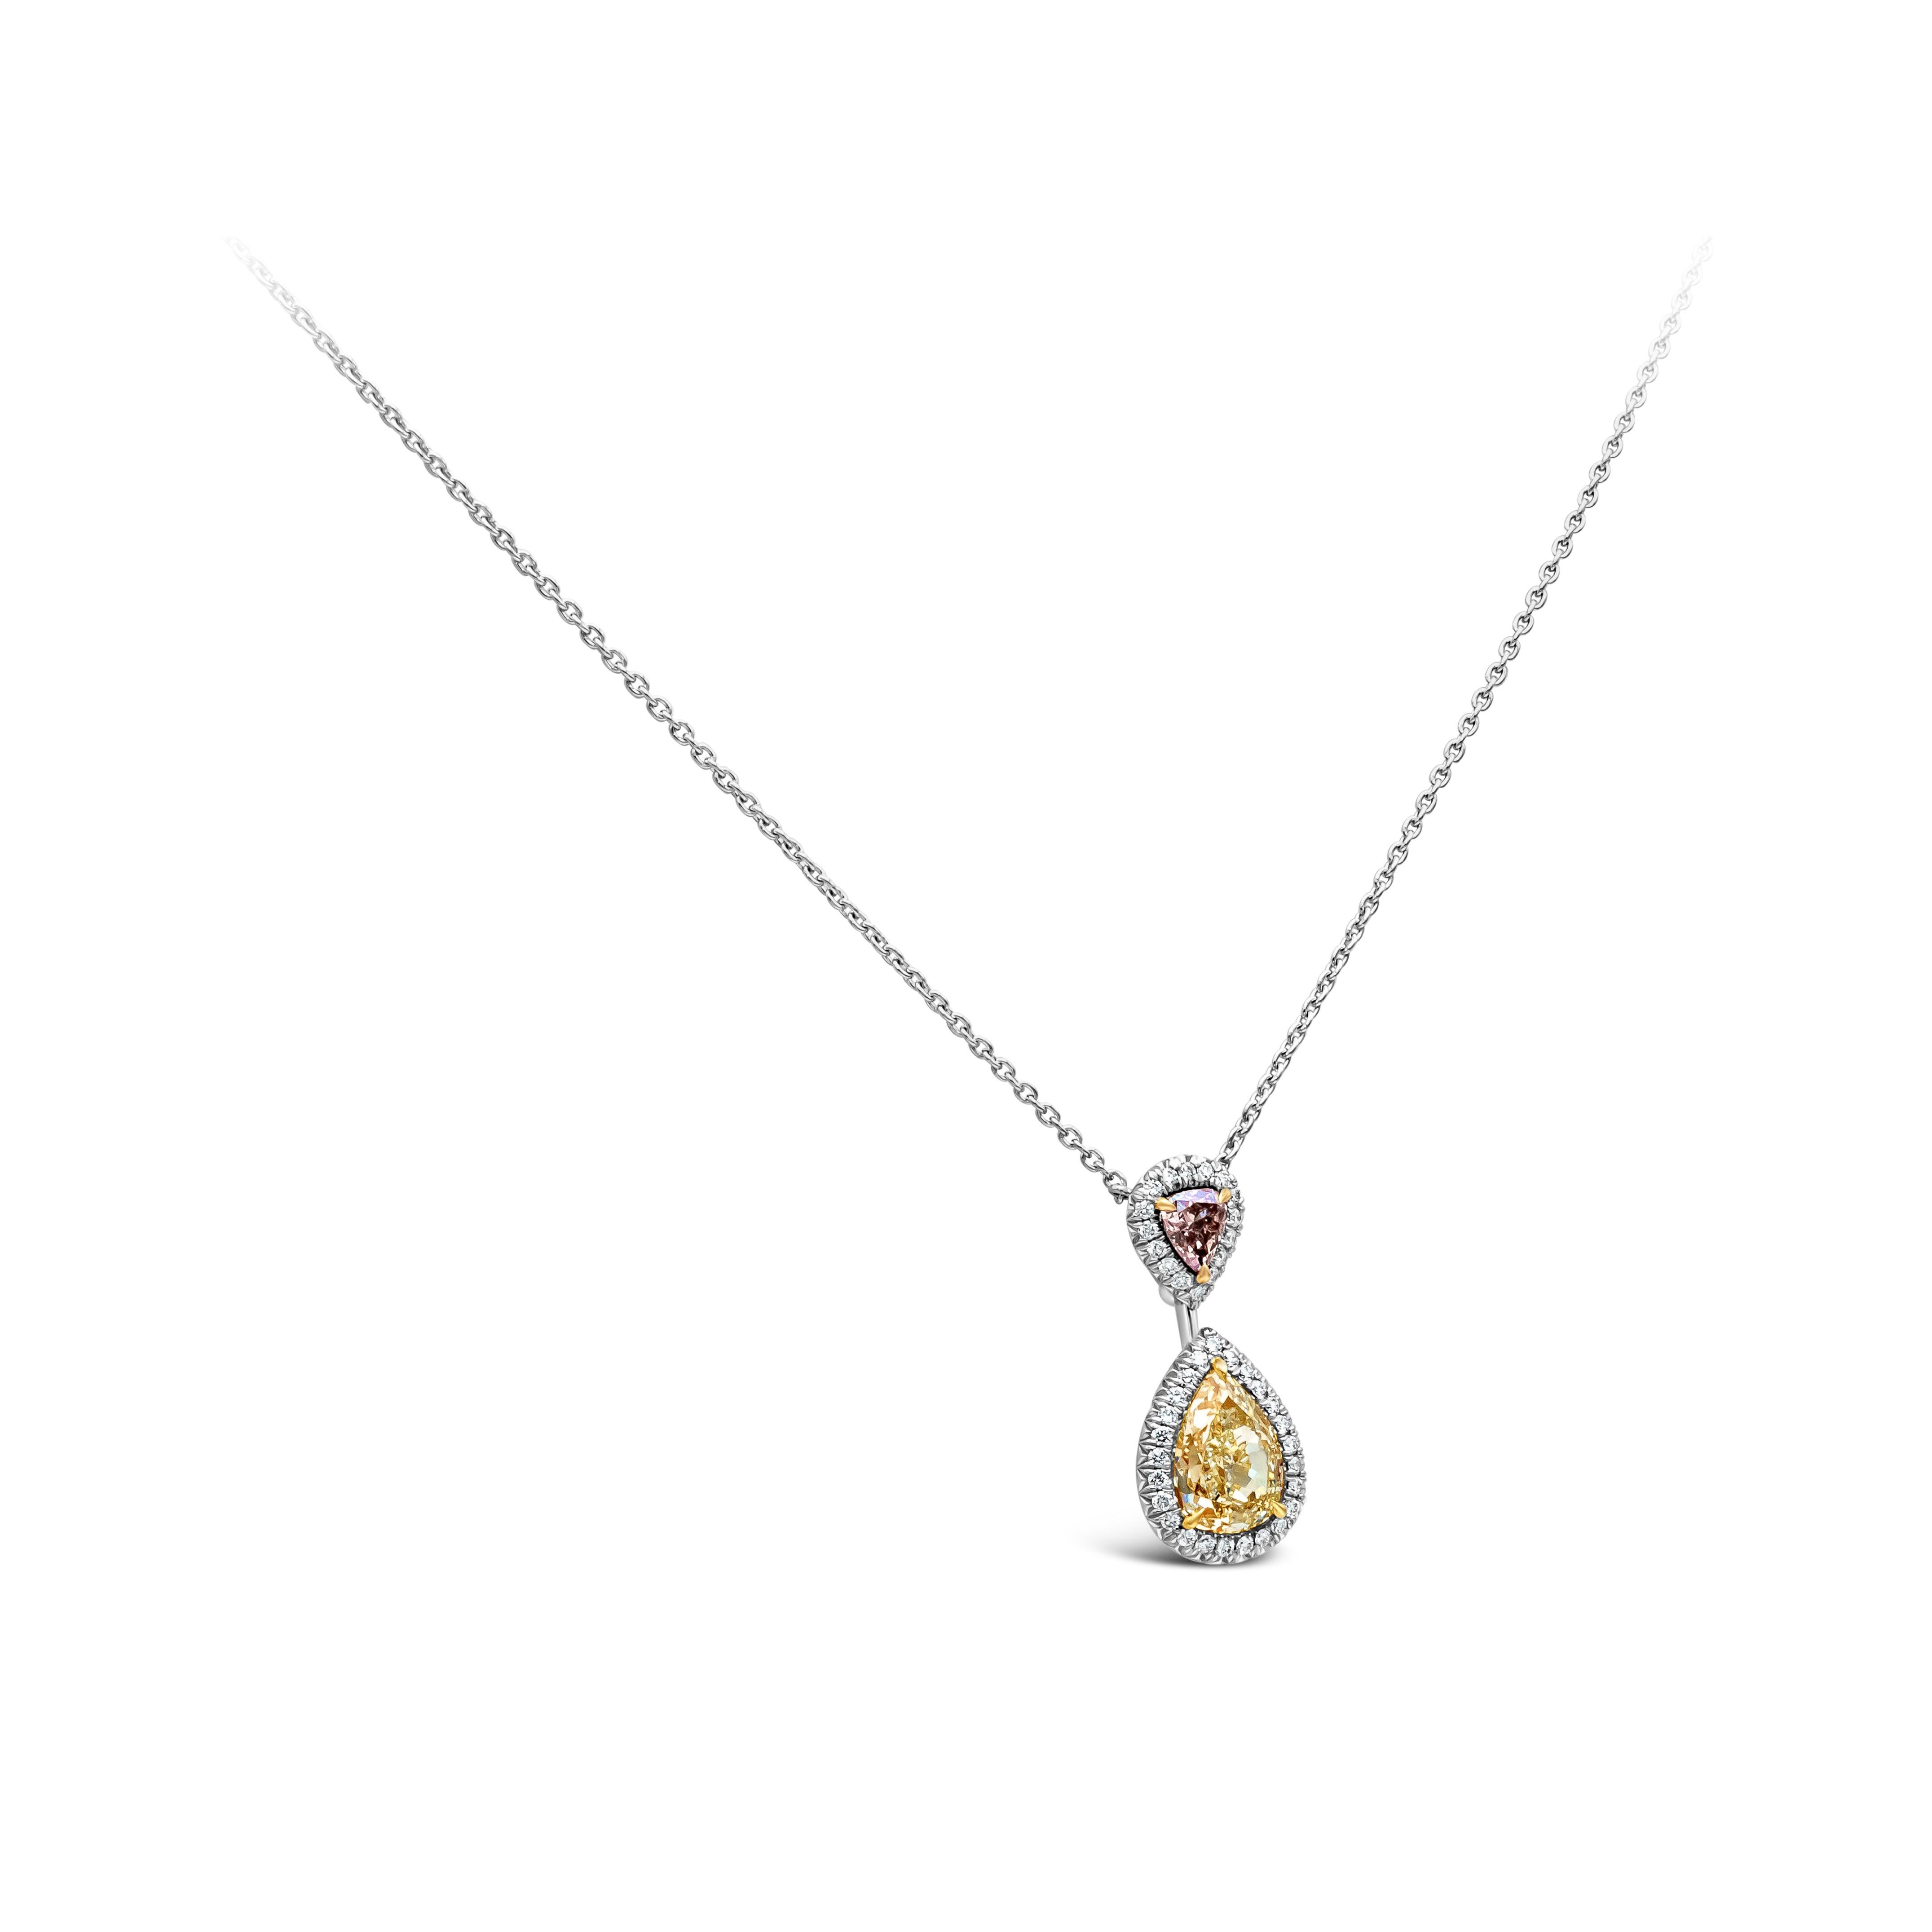 Ce magnifique collier pendentif met en valeur un diamant poire certifié GIA de 1,69 carat de couleur jaune clair suspendu à un diamant cœur certifié GIA de 0,25 carat de couleur bleu rose fantaisie. Entouré de 41 diamants blancs ronds brillants